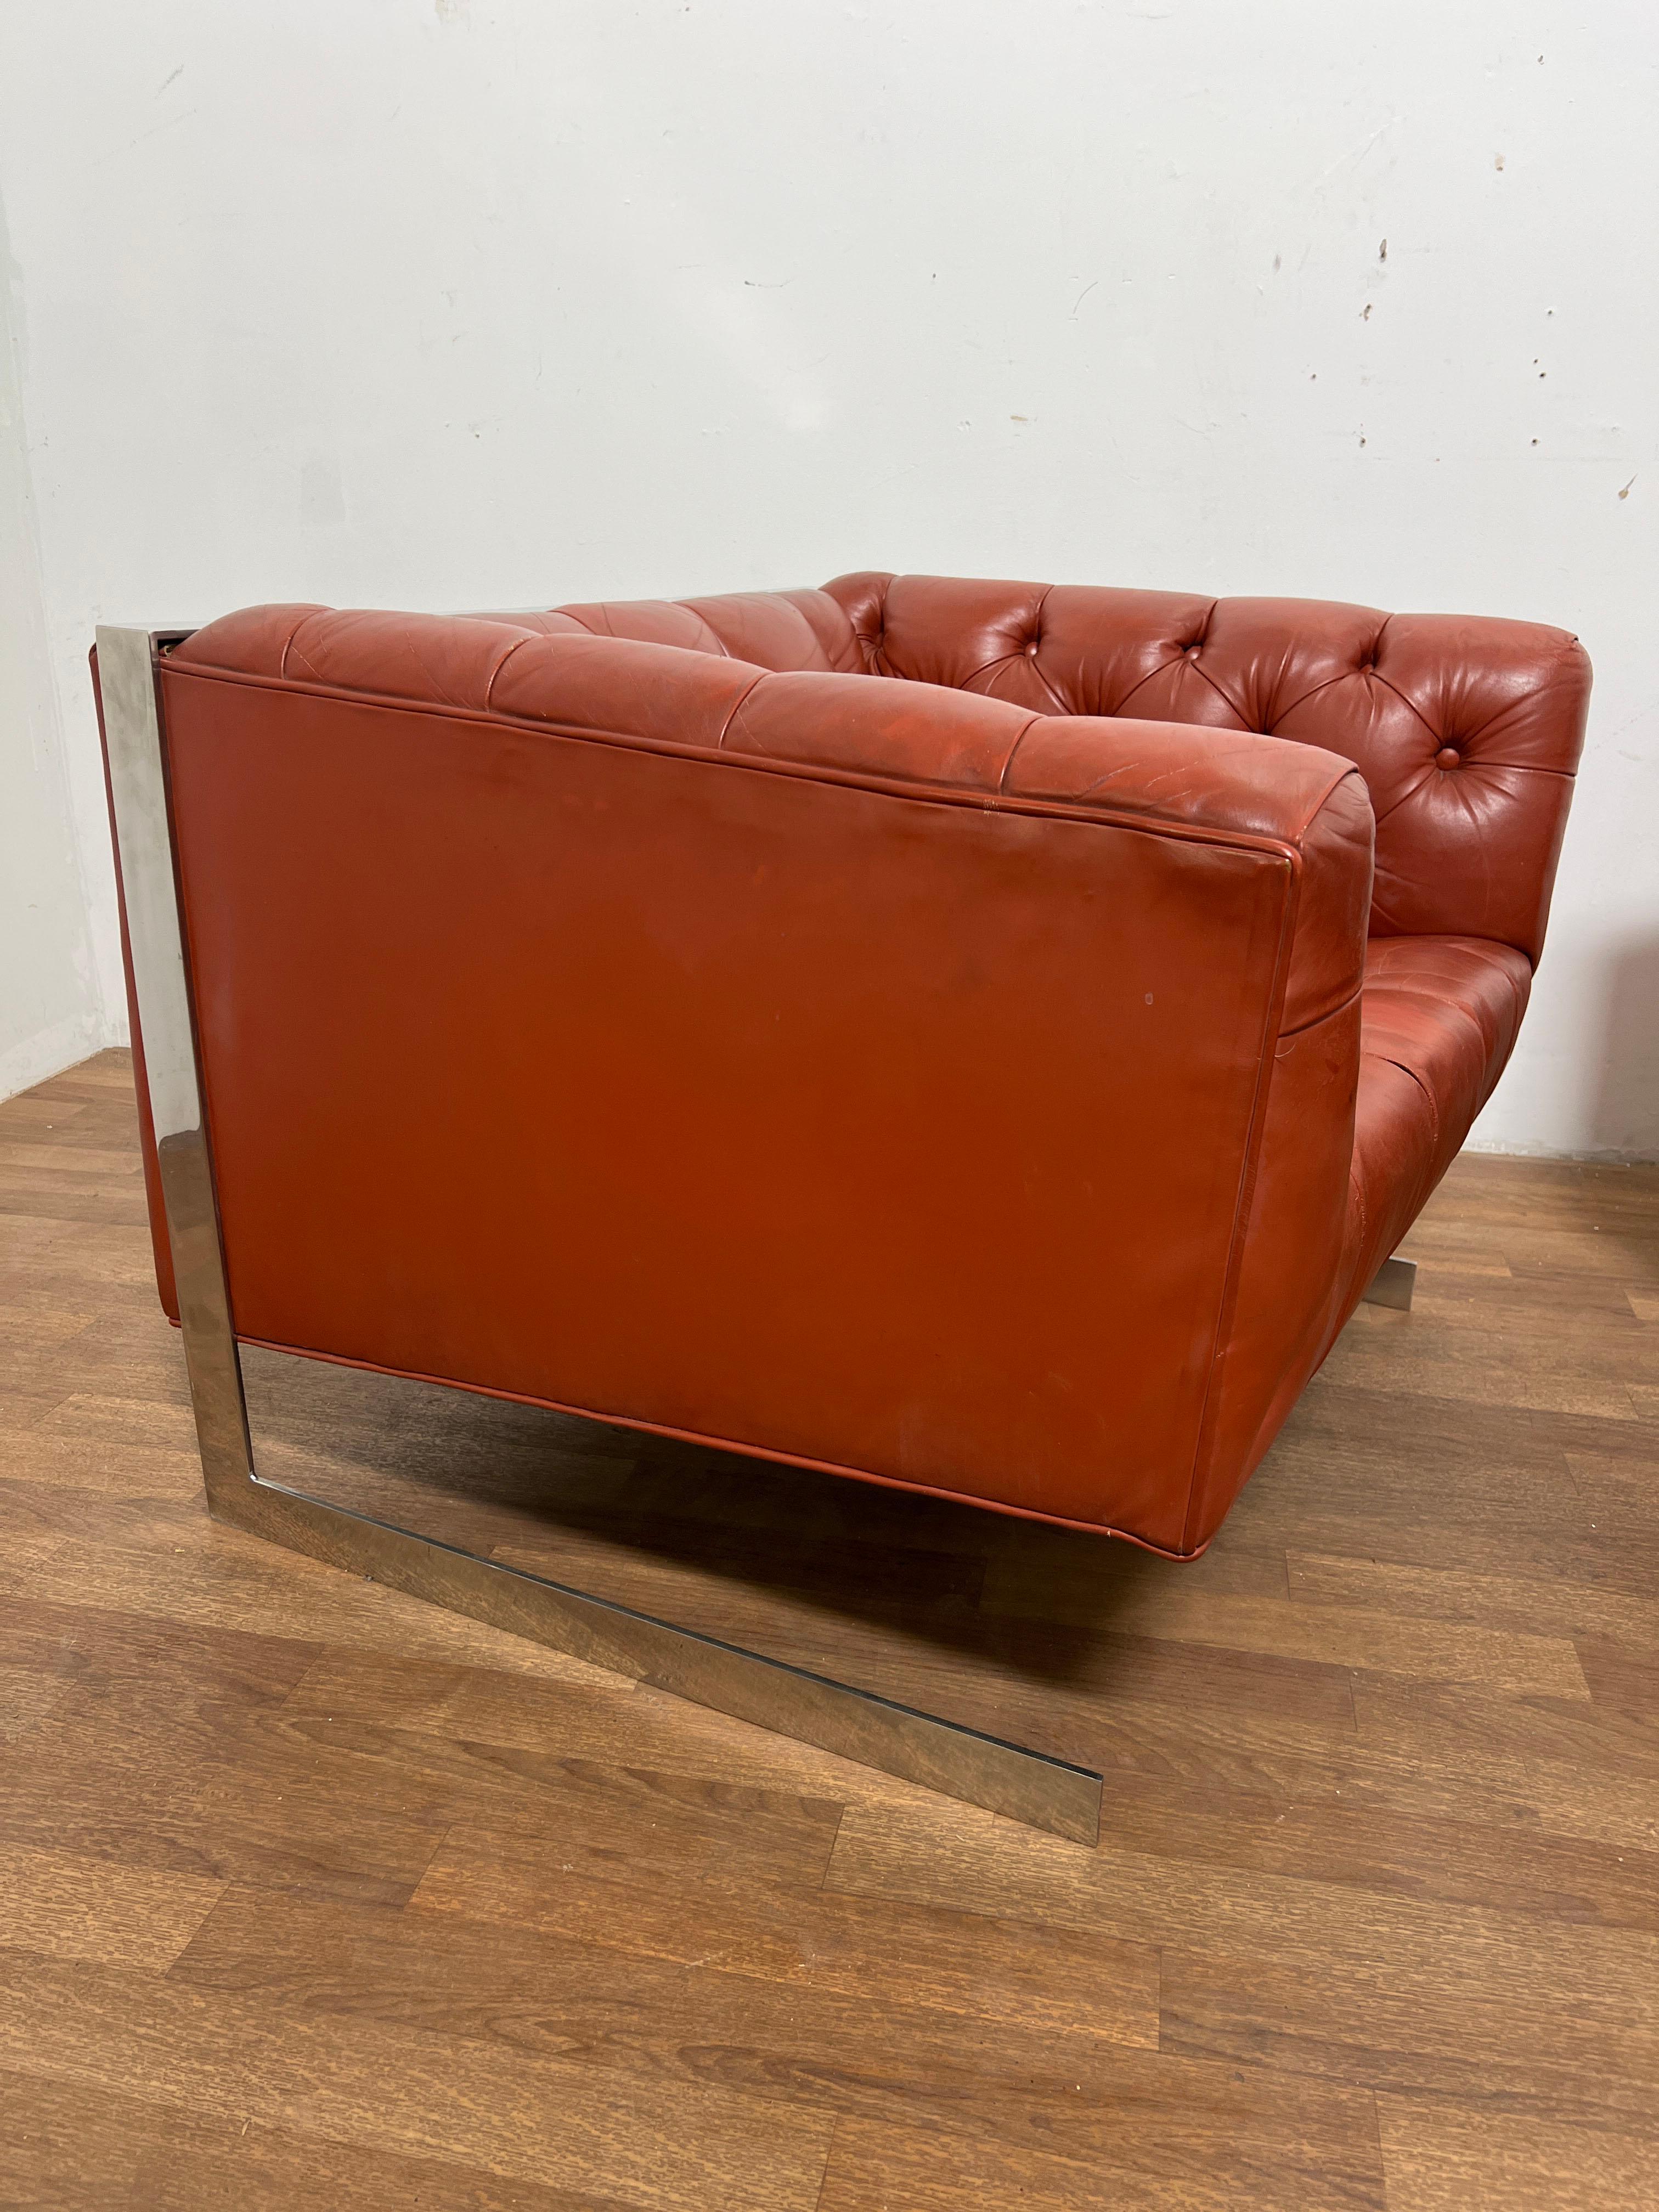 Paire de chaises de salon Chesterfield de style Milo CIRCA, en cuir cognac véritable, avec piétements luge en chrome poli, vers les années 1970.